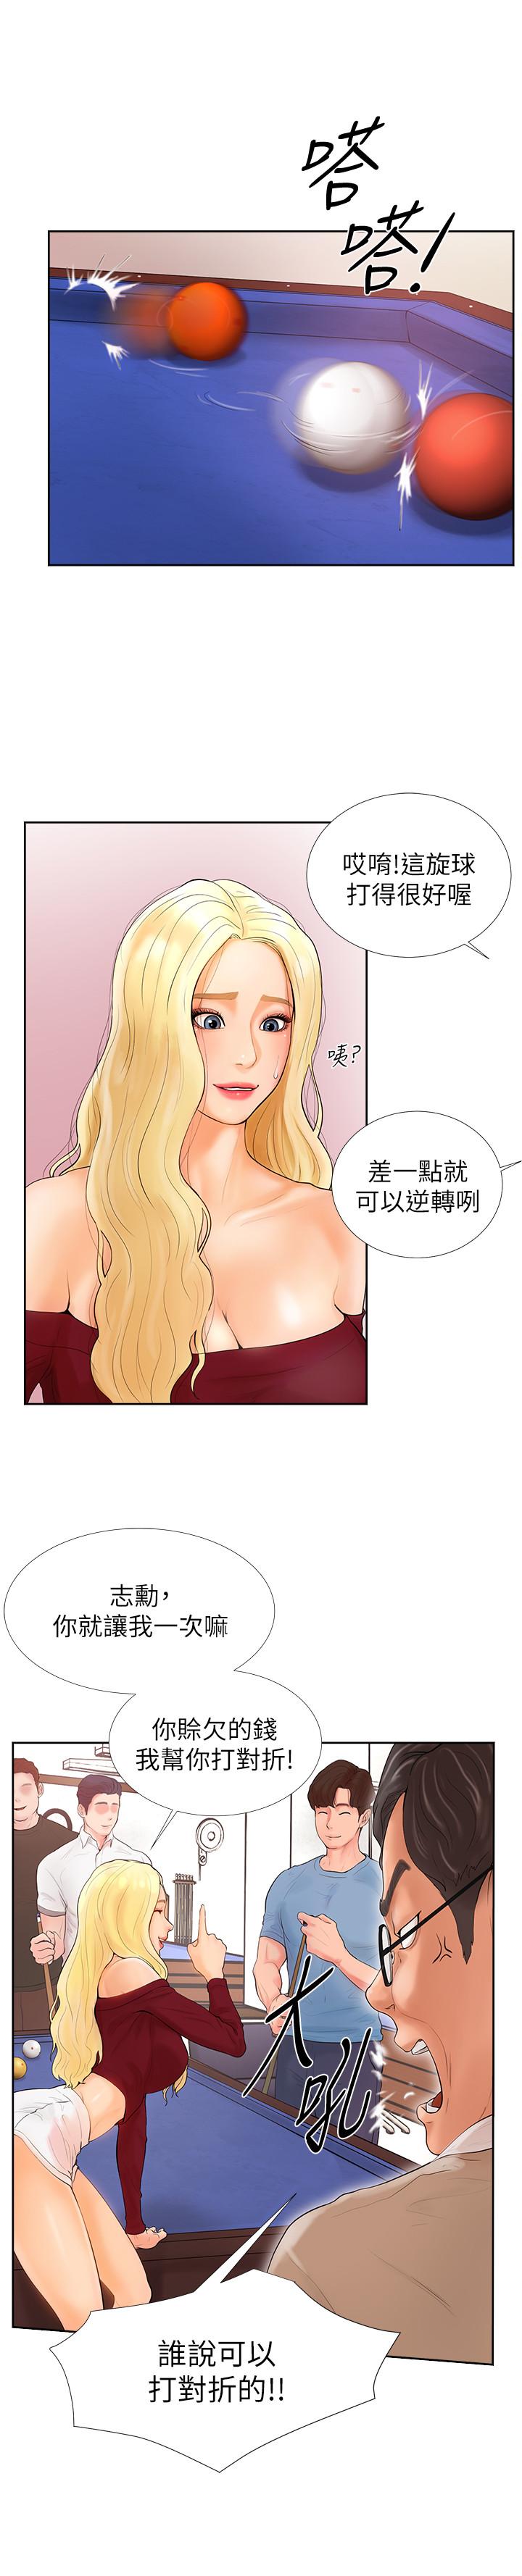 韩国污漫画 撞球甜心 第1话-要不要和姐姐来一场呀 5